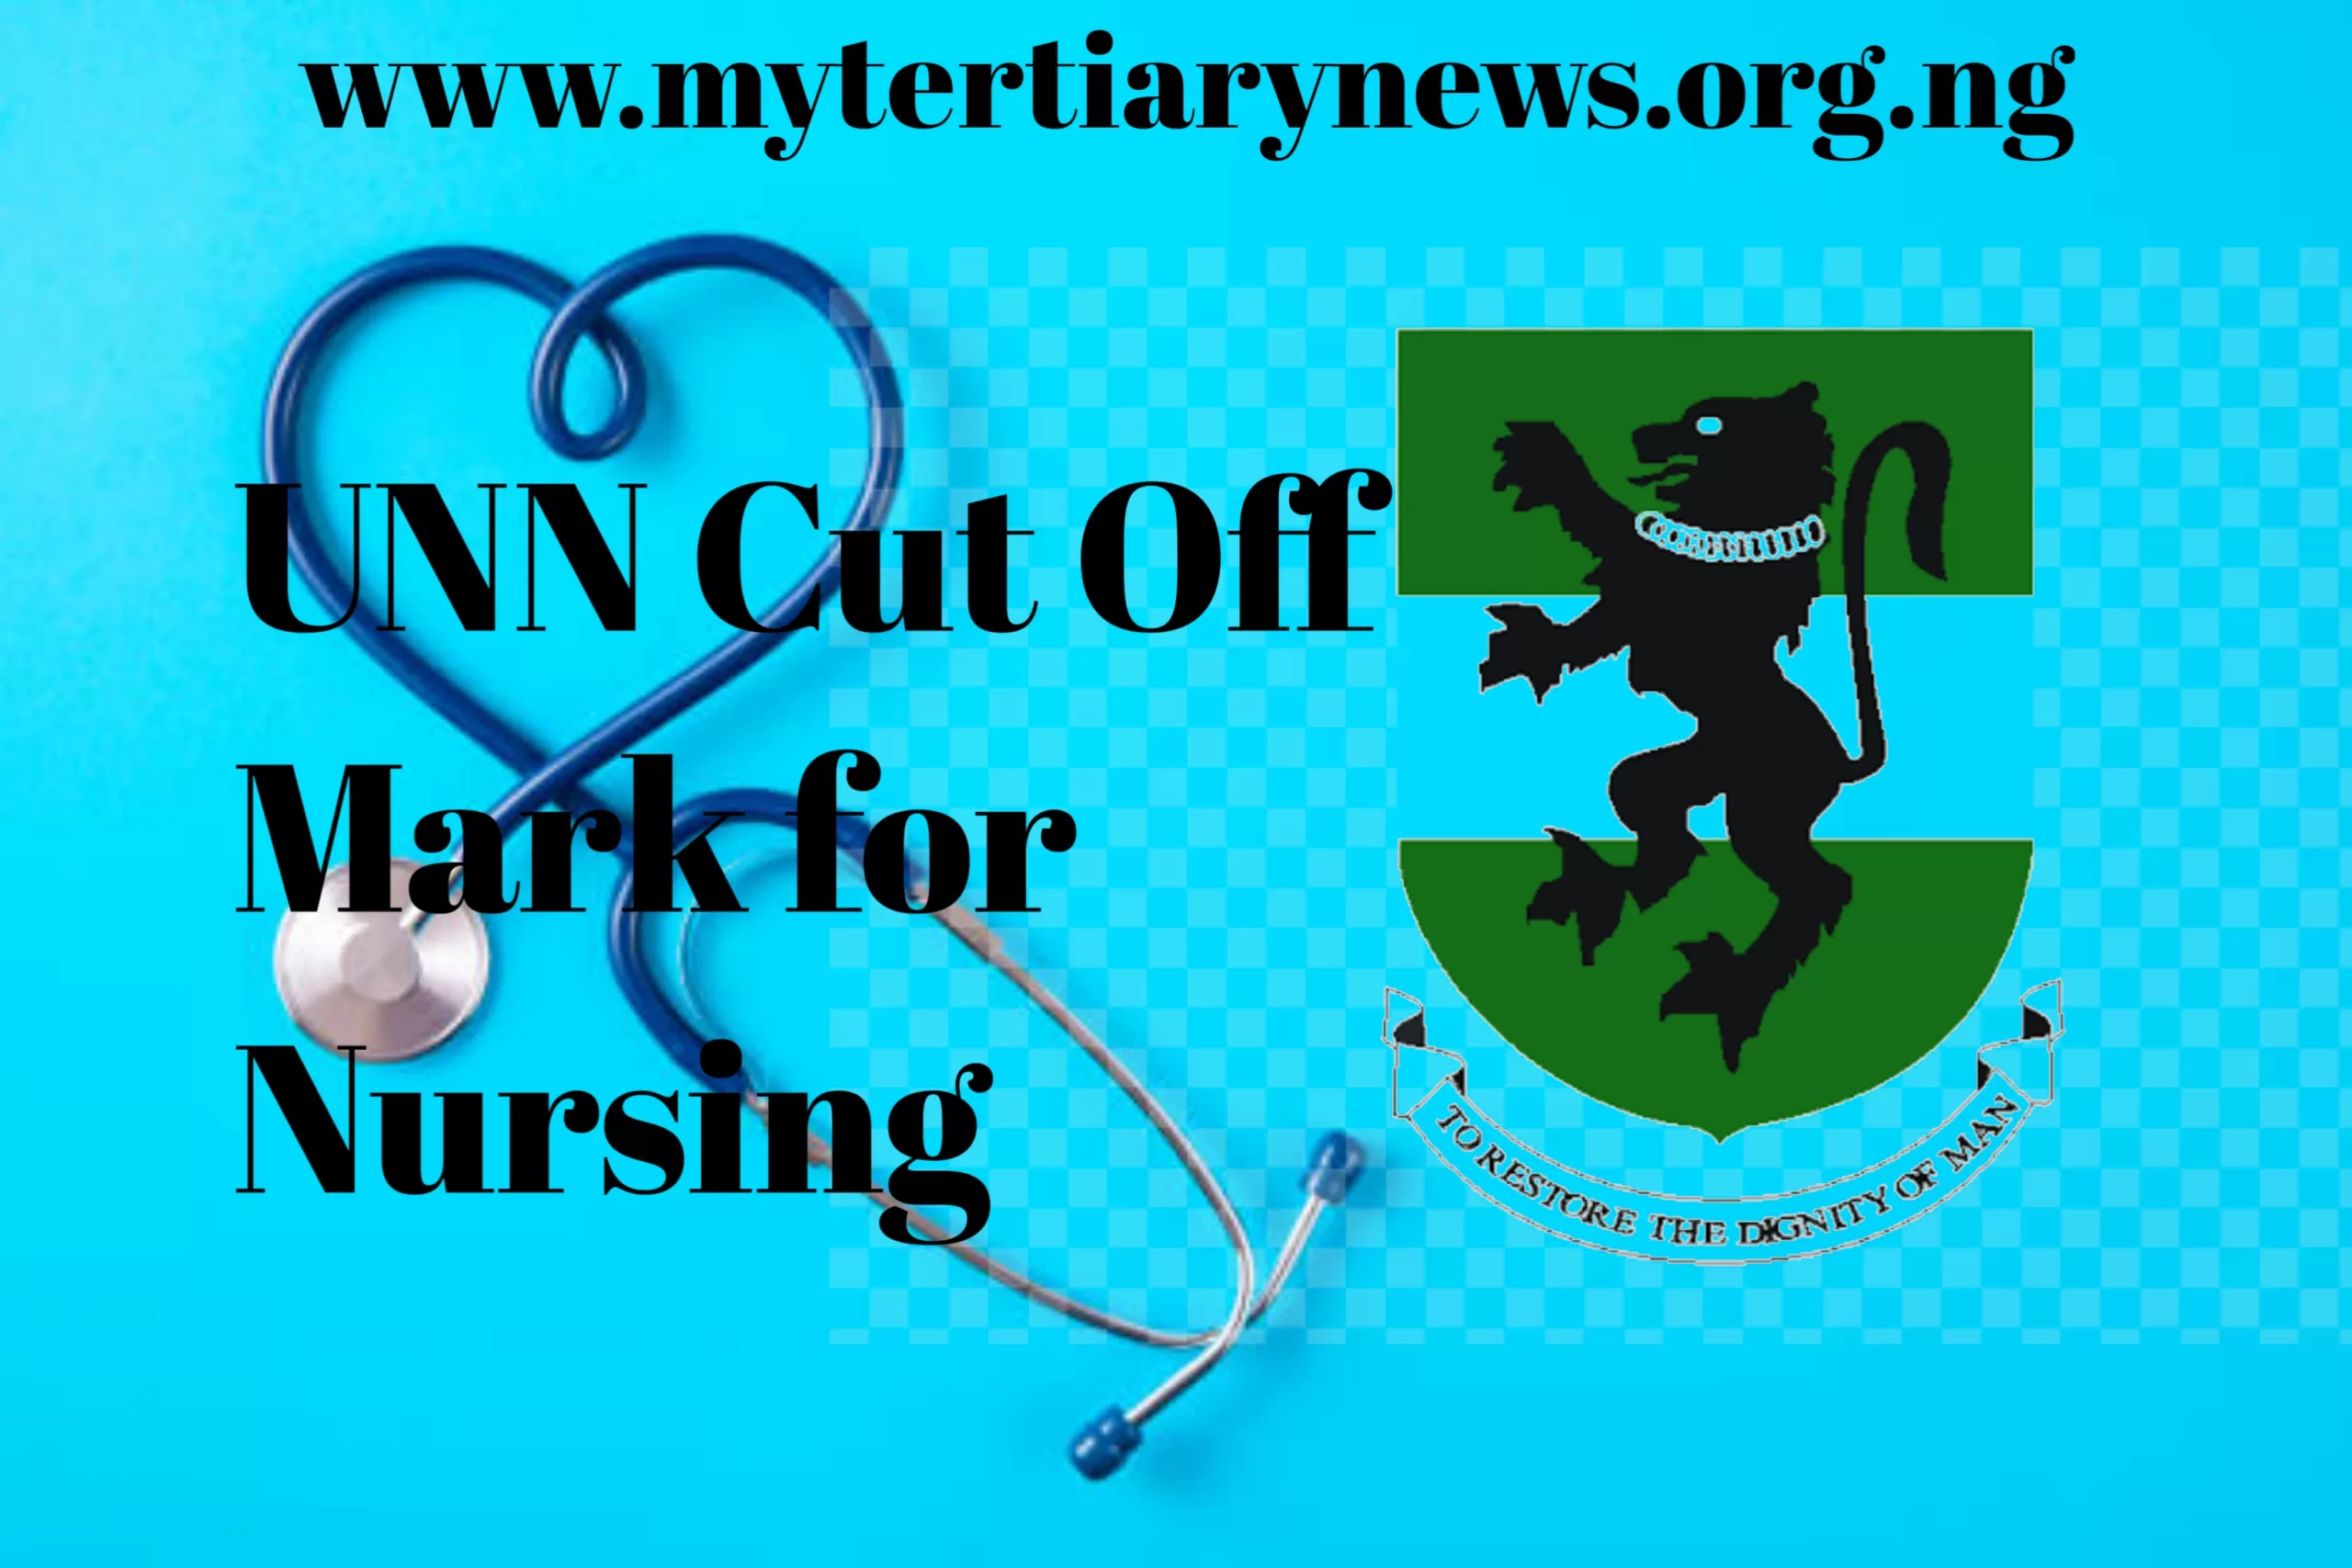 UNN Image || UNN Cut Off Mark for Nursing